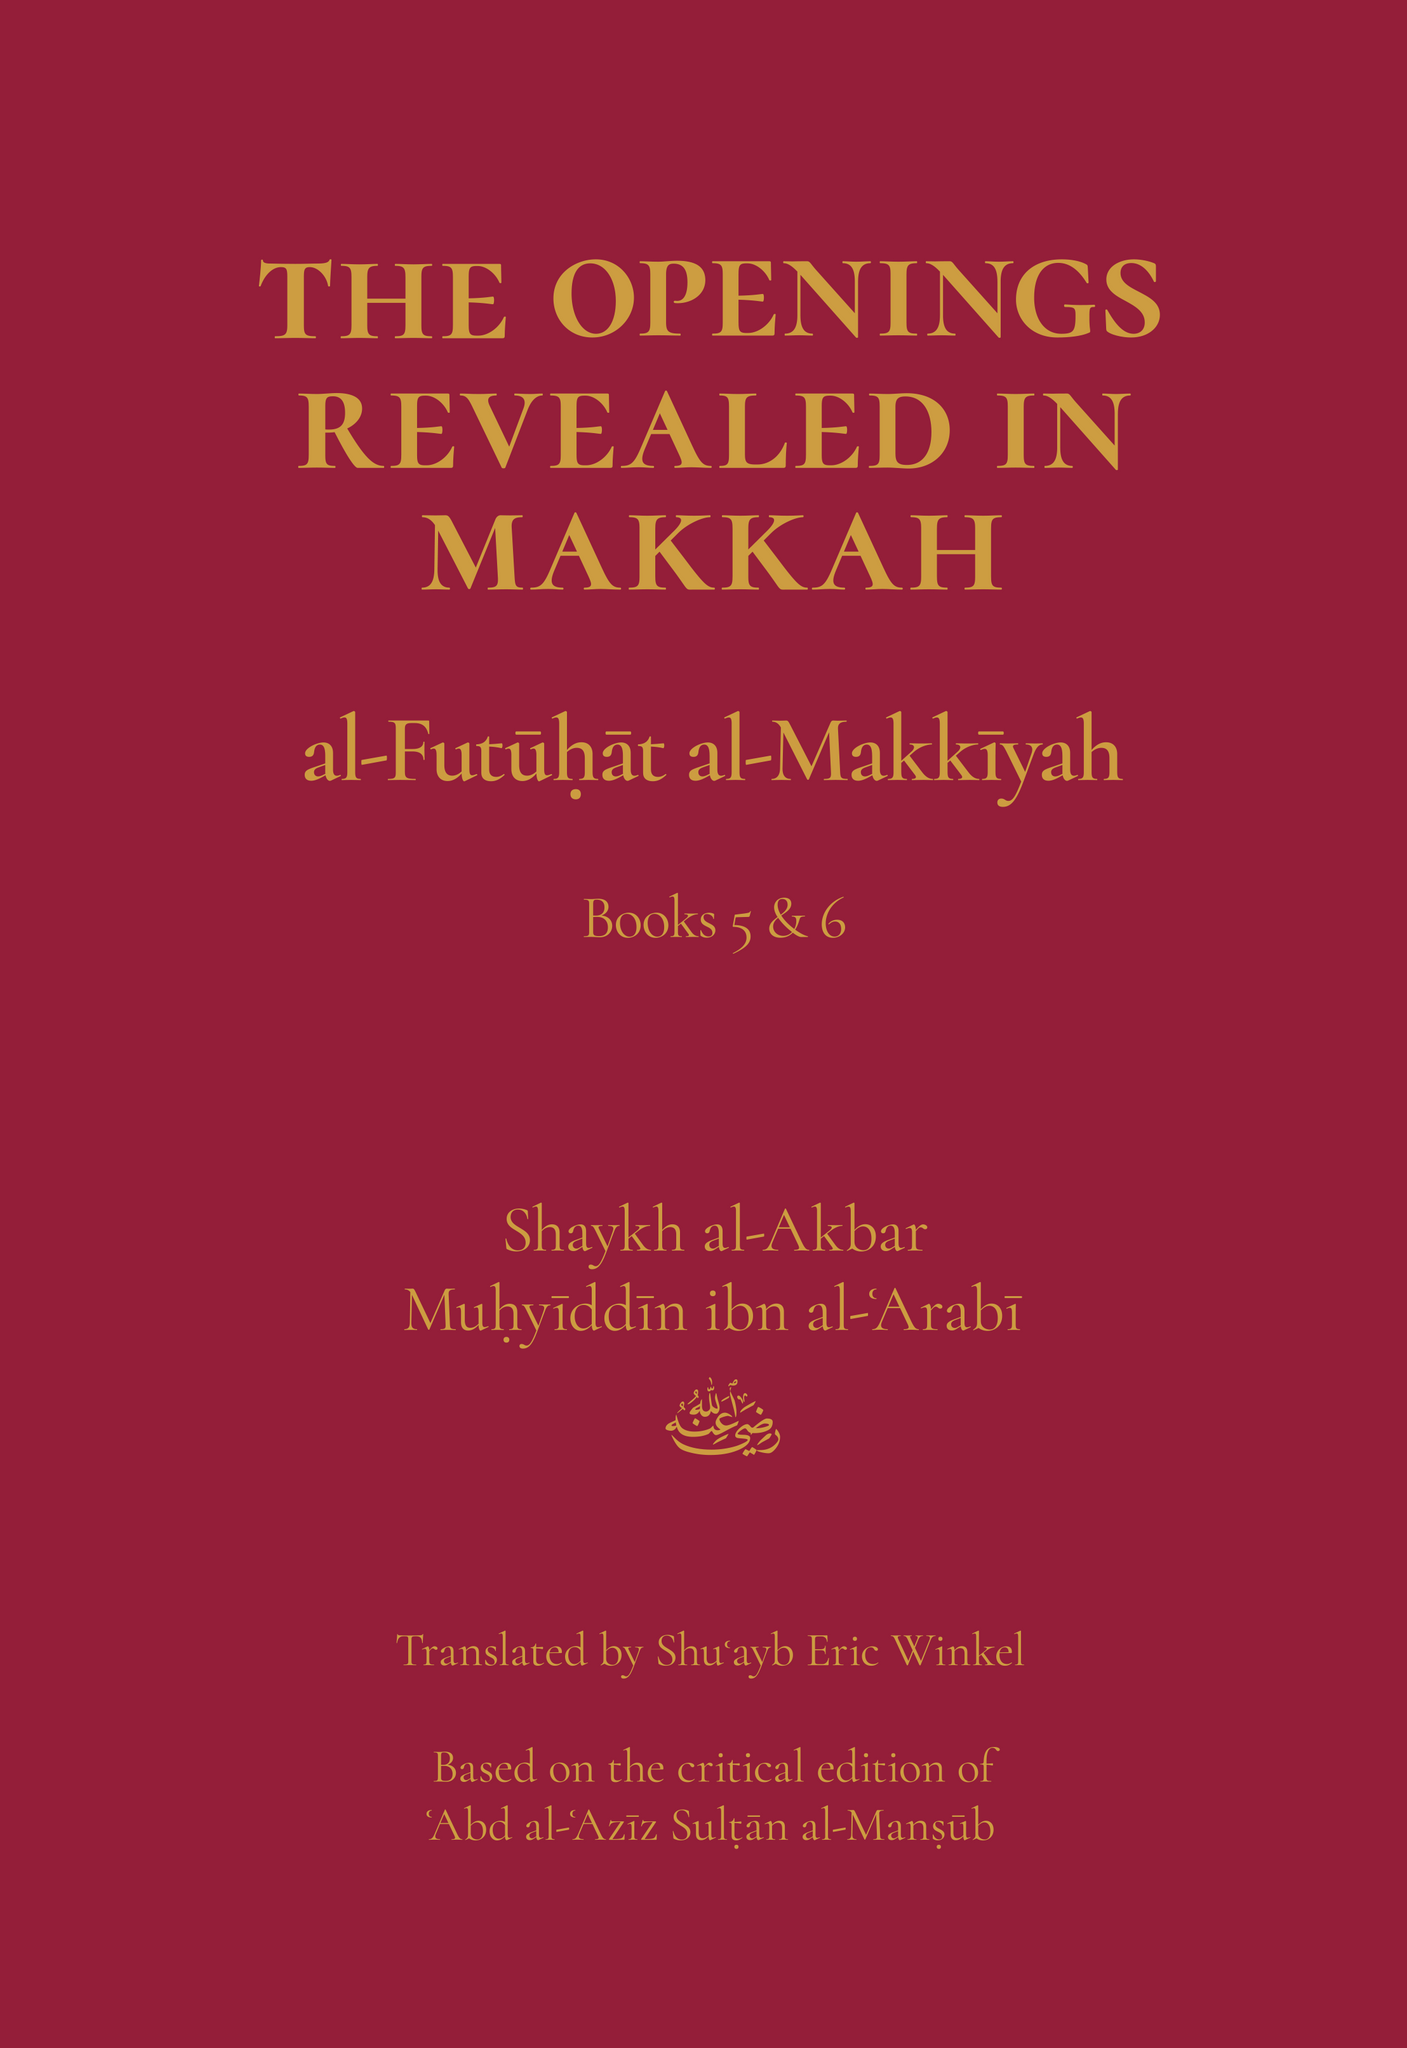 The Openings Revealed in Makkah, Volume 3